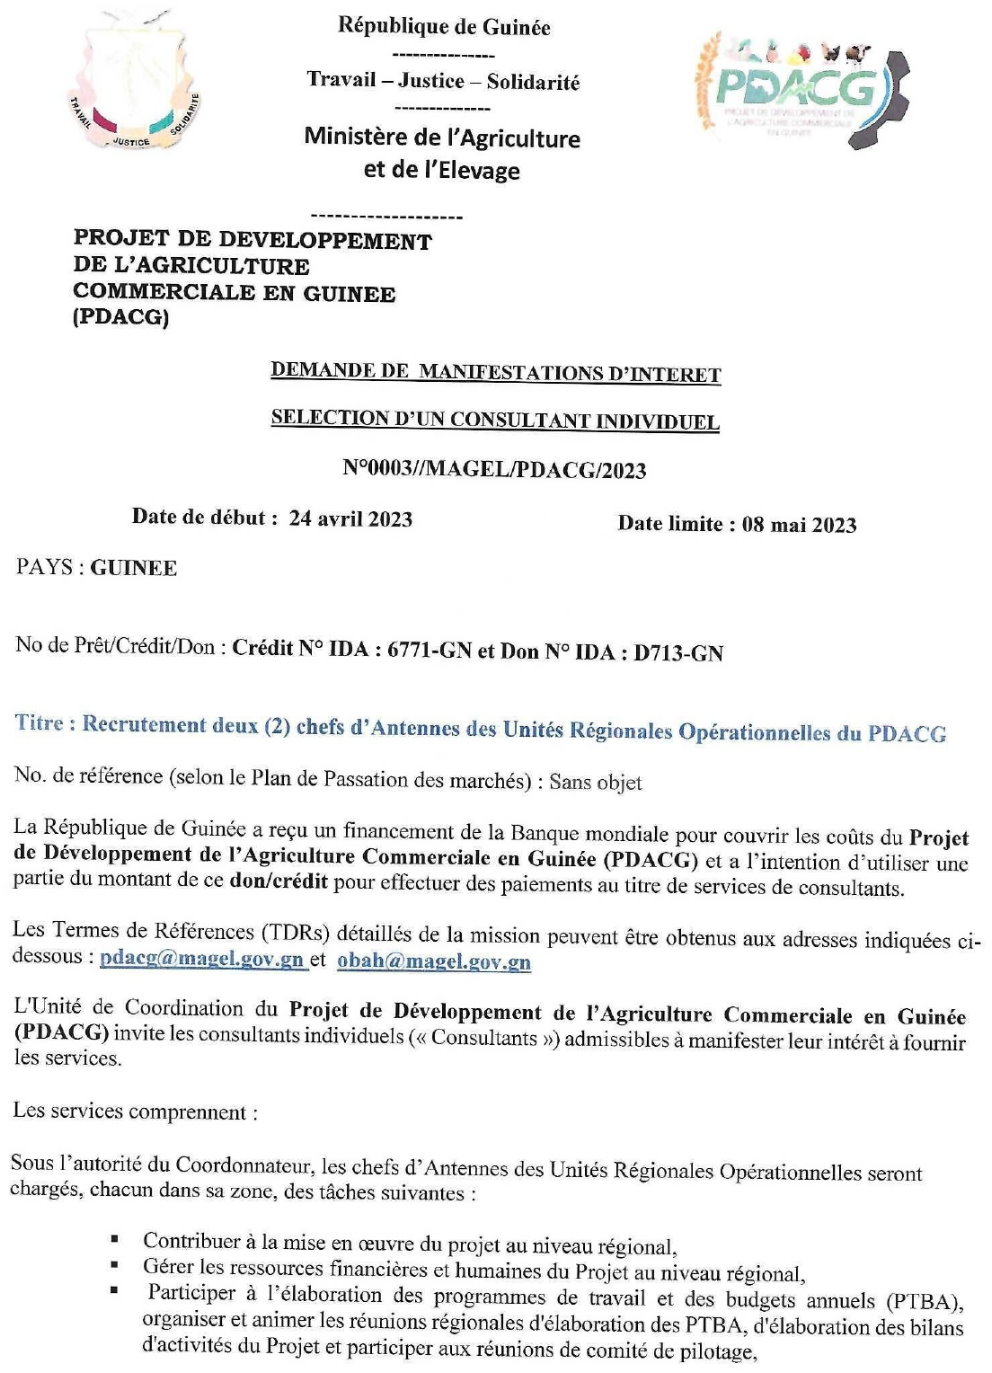 Demande de manifestation d'intérêt pour le Recrutement deux (2) chefs d’Antennes des Unités Régionales Opérationnelles du PDACG | Page 1